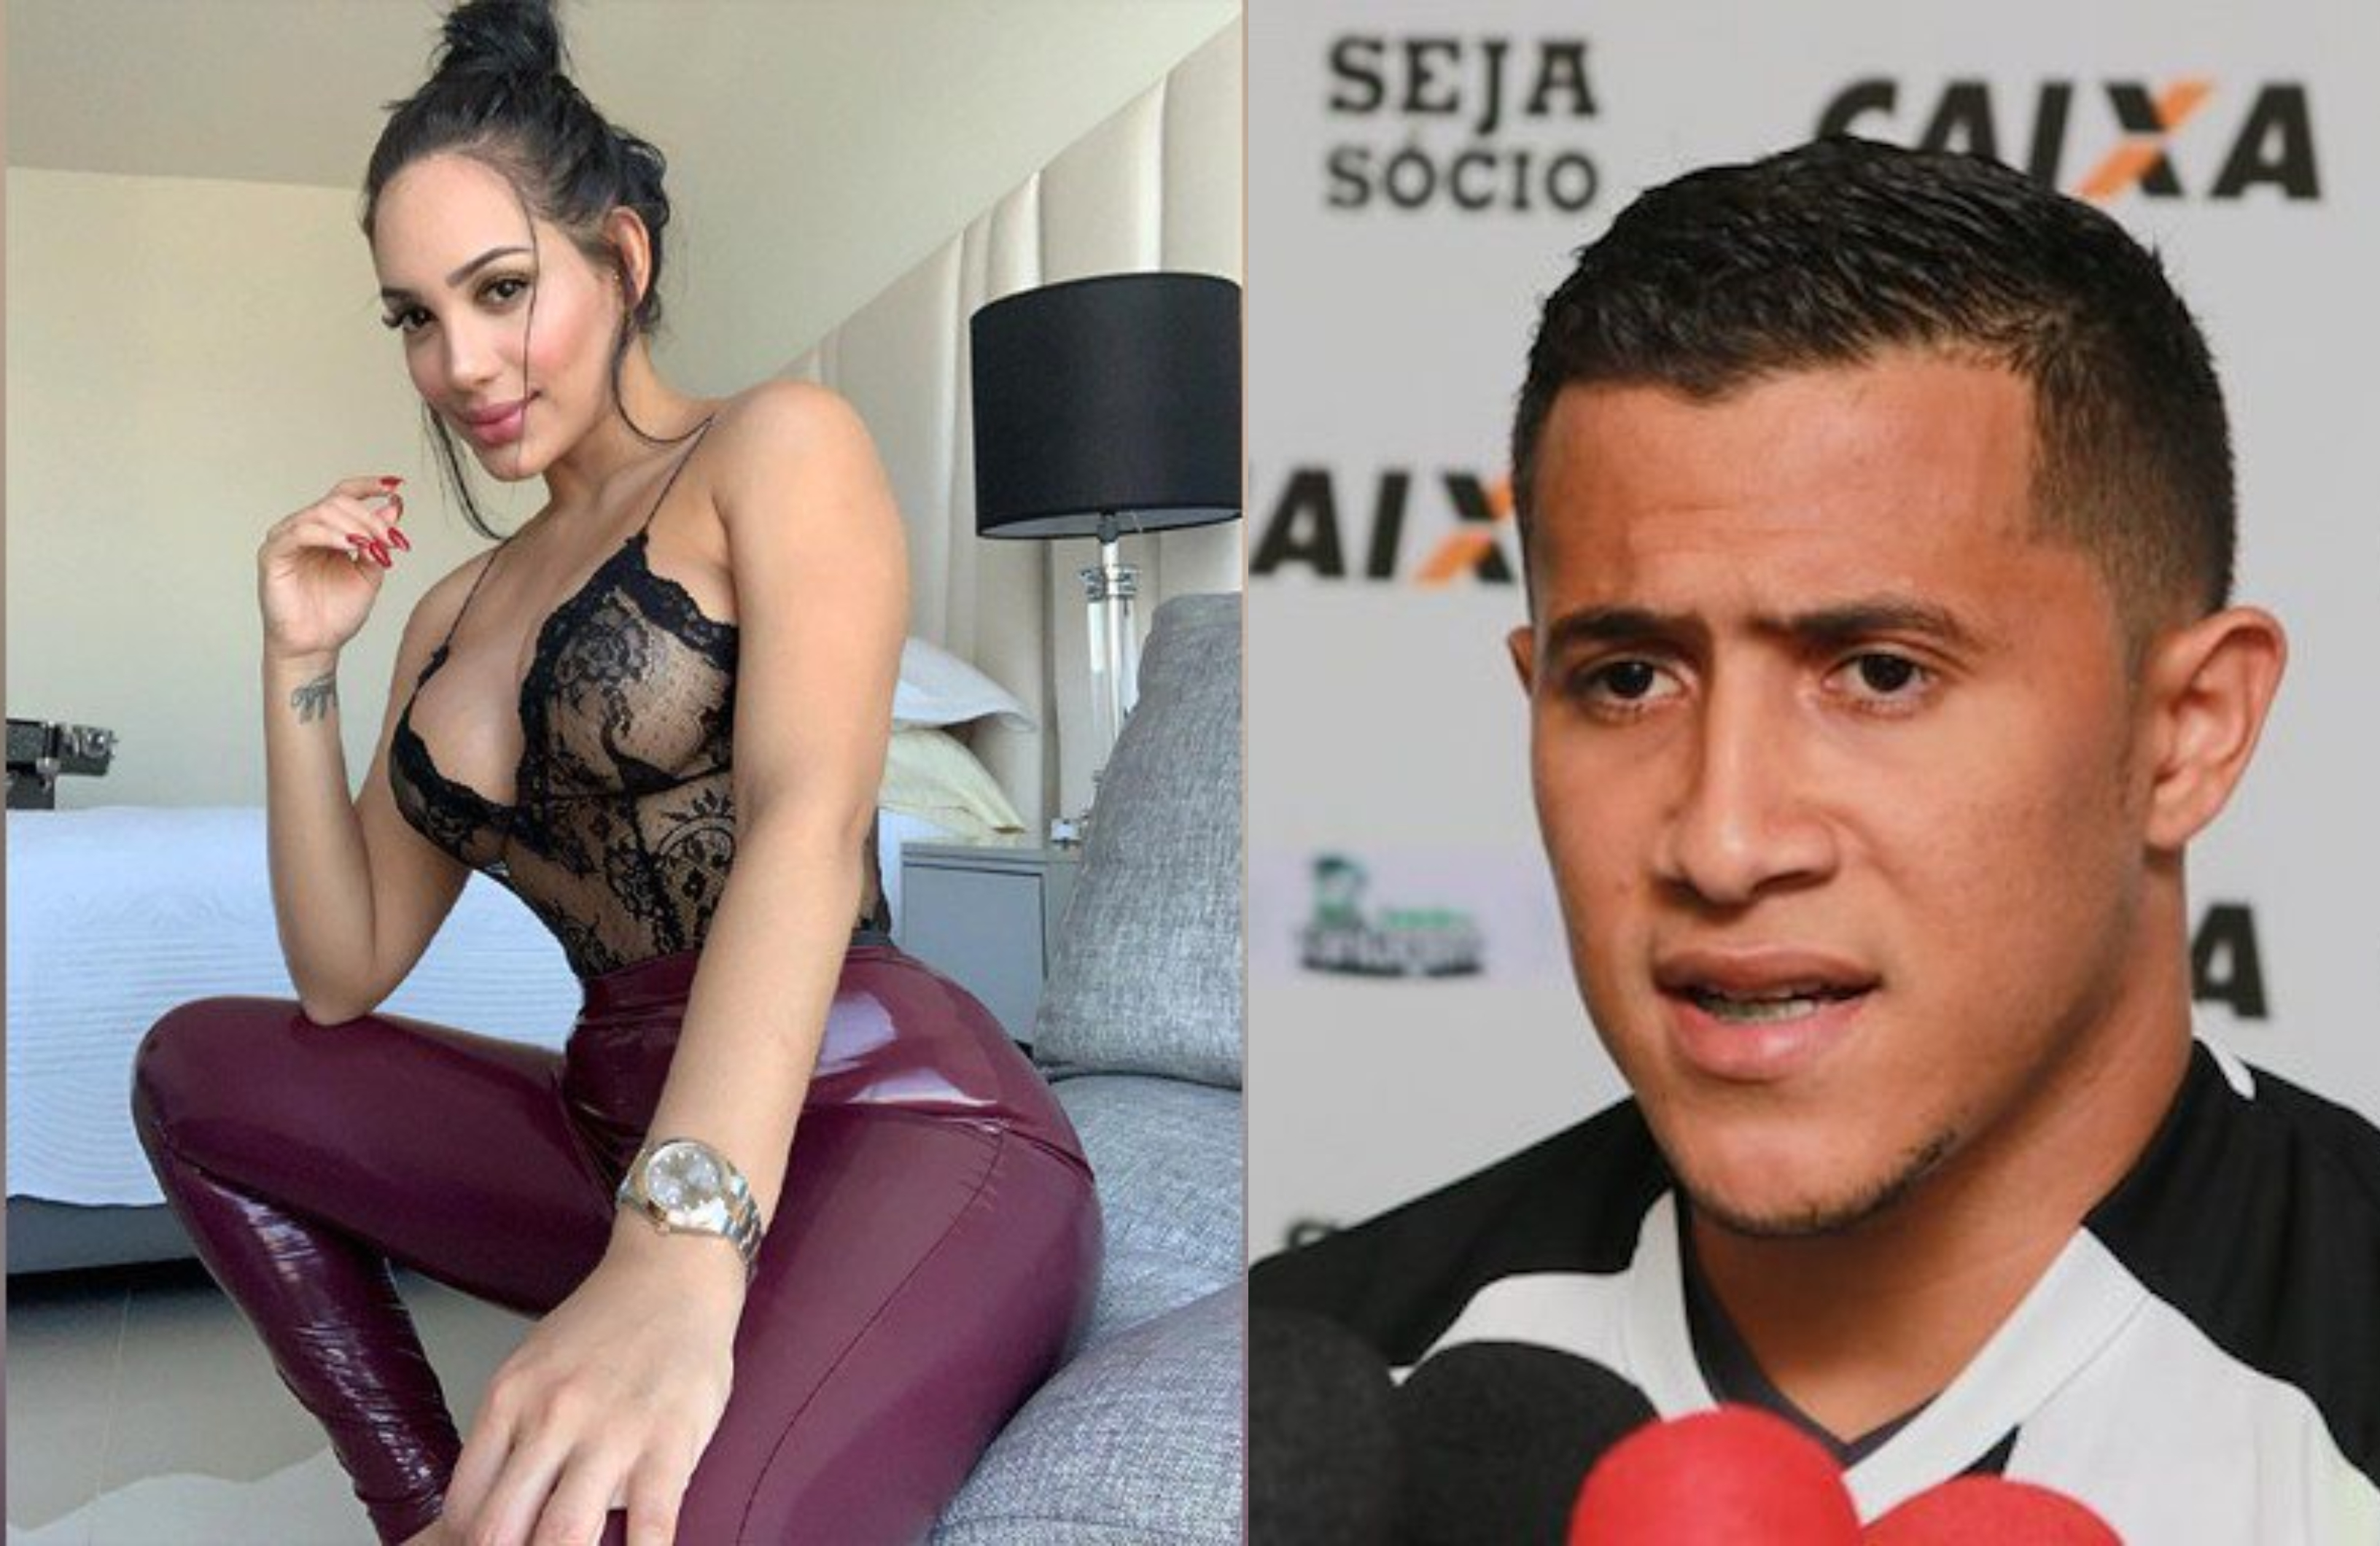 Futbolista difunde fotos sexuales con su ex novia y así respondió ella (+Fotos)